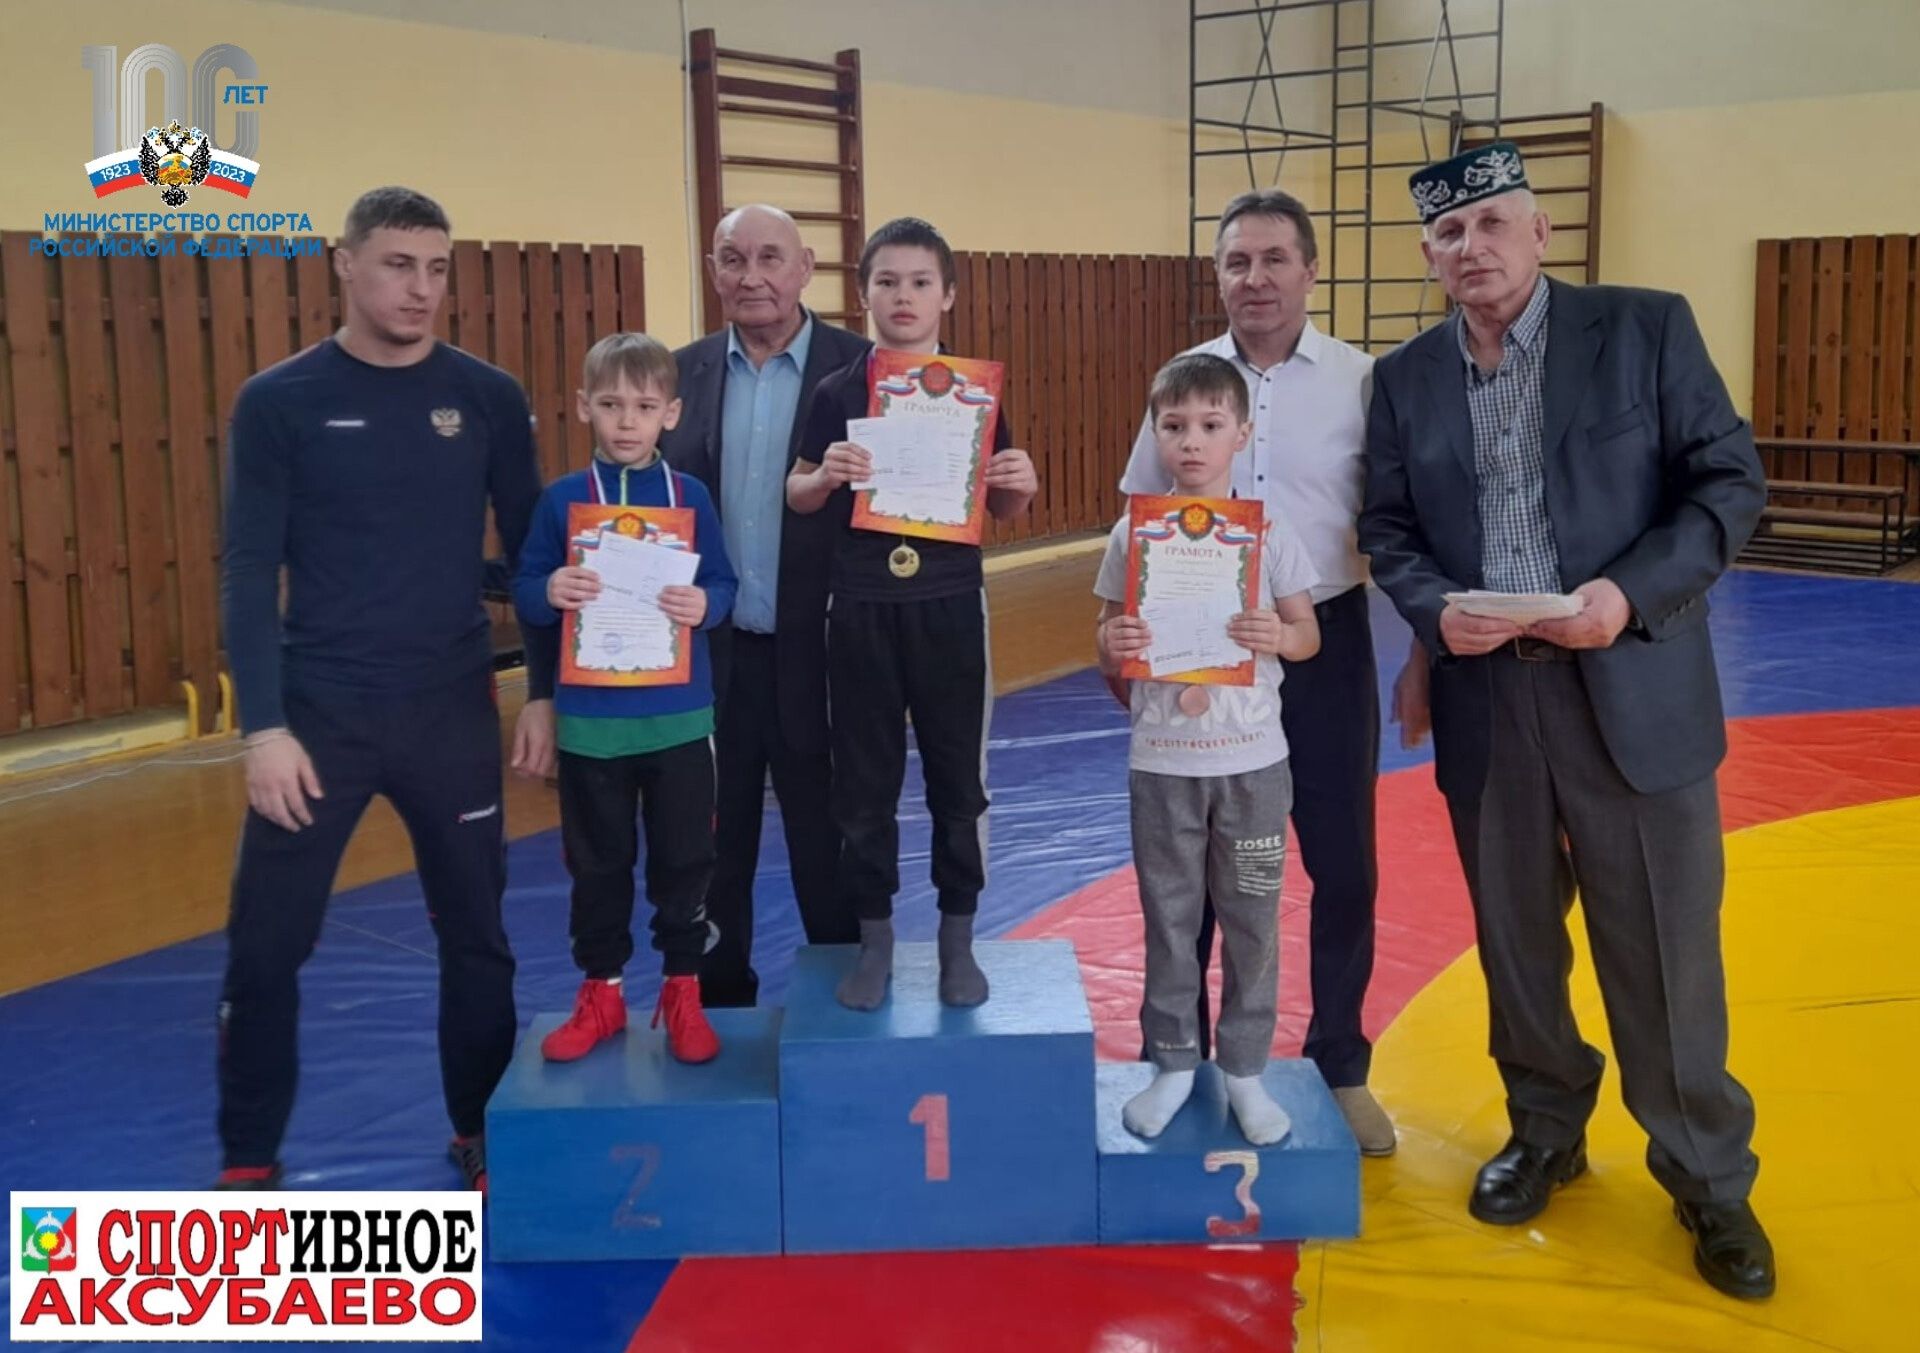 Аксубаевские борцы завоевали медали на чистопольском ковре